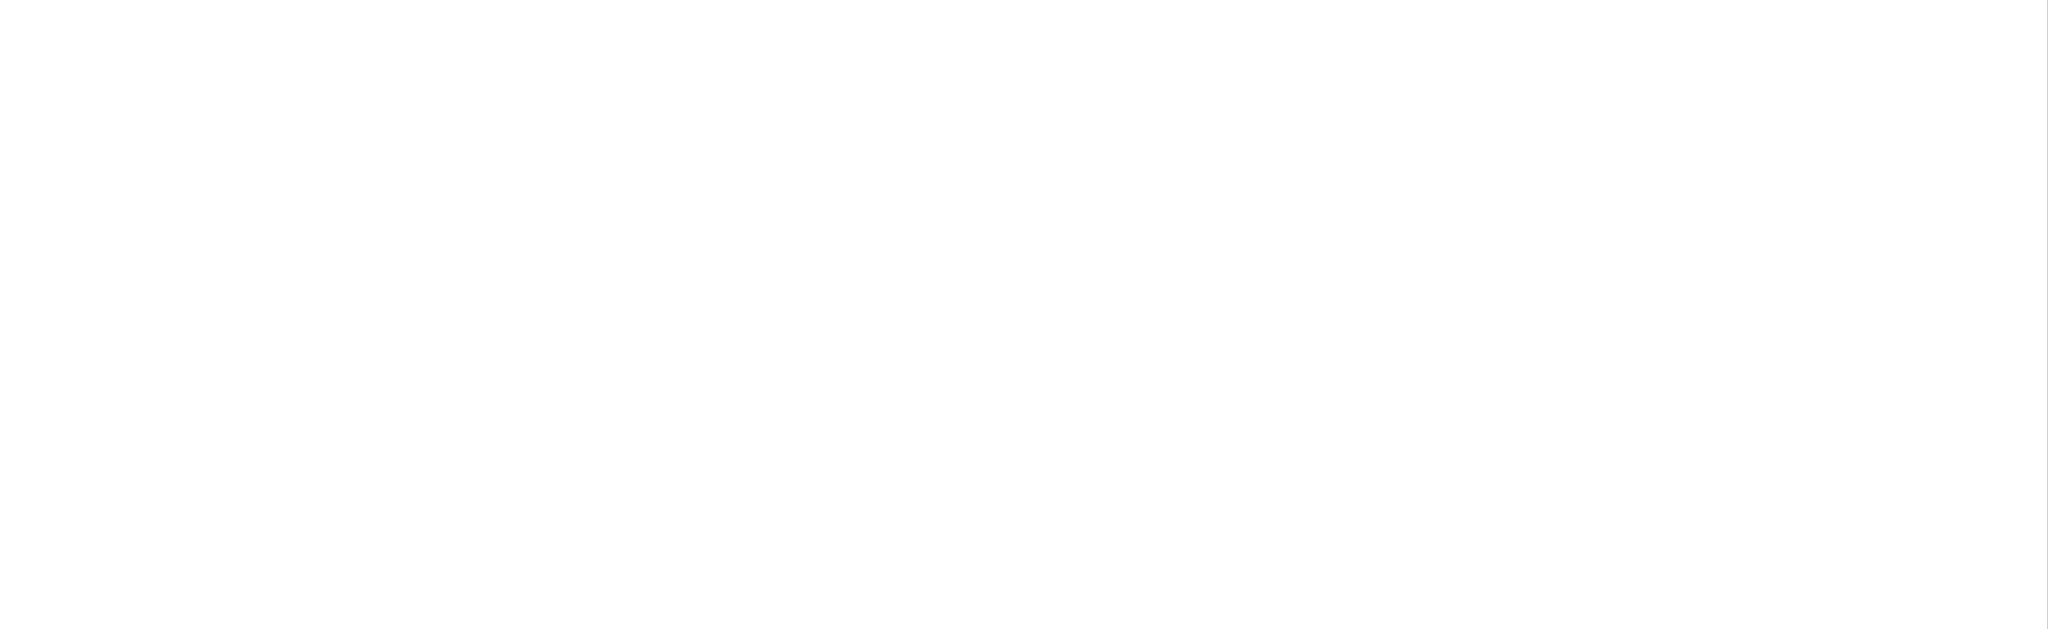 PREMIER SUITES Glasgow George Square